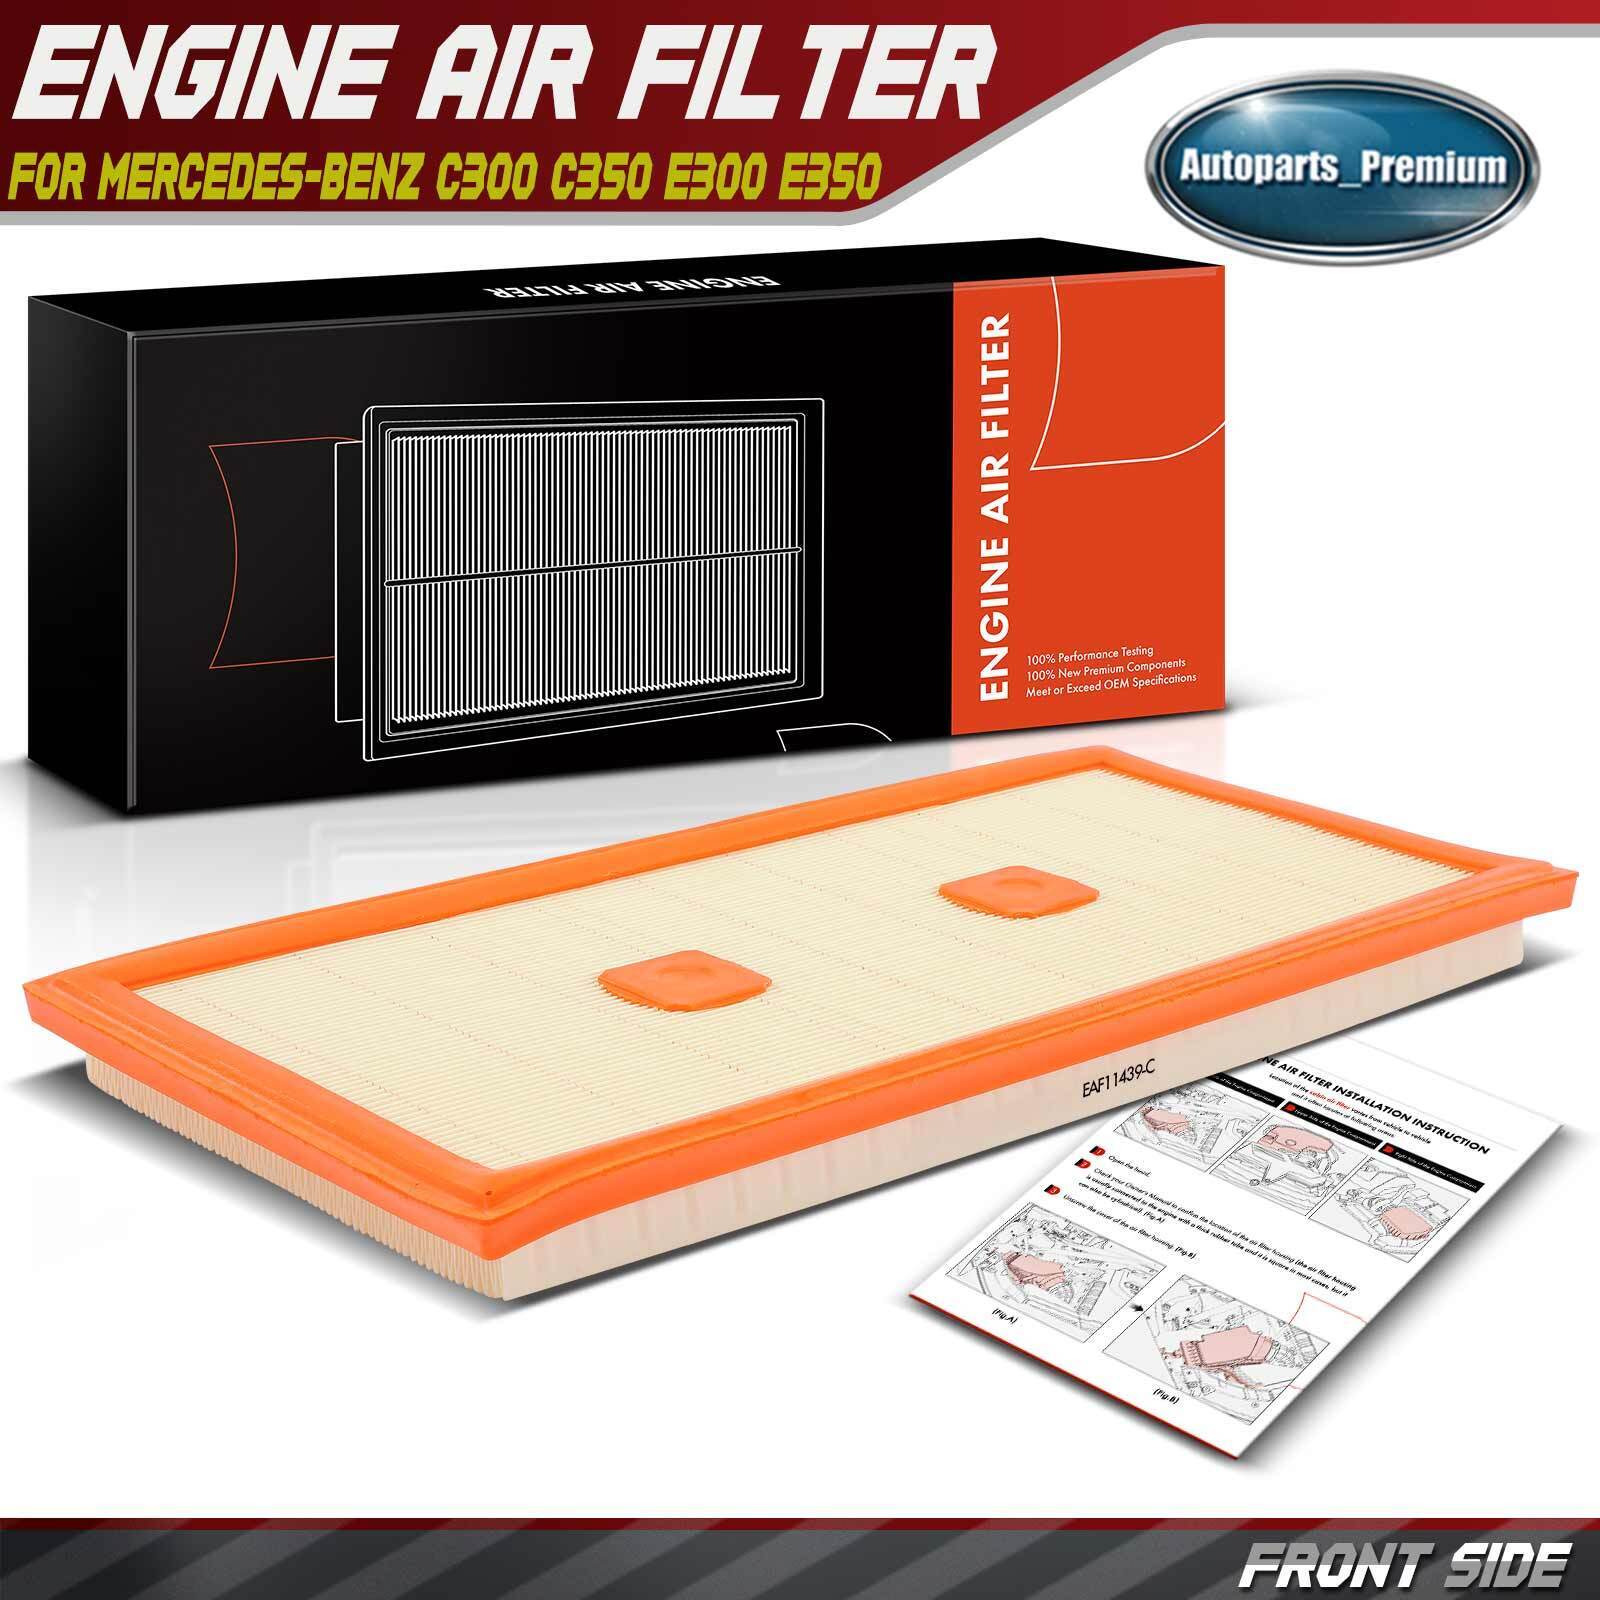 Engine Air Filter for Mercedes-Benz C300 C350 E300 E350 E400 GLE350 GLK350 R350